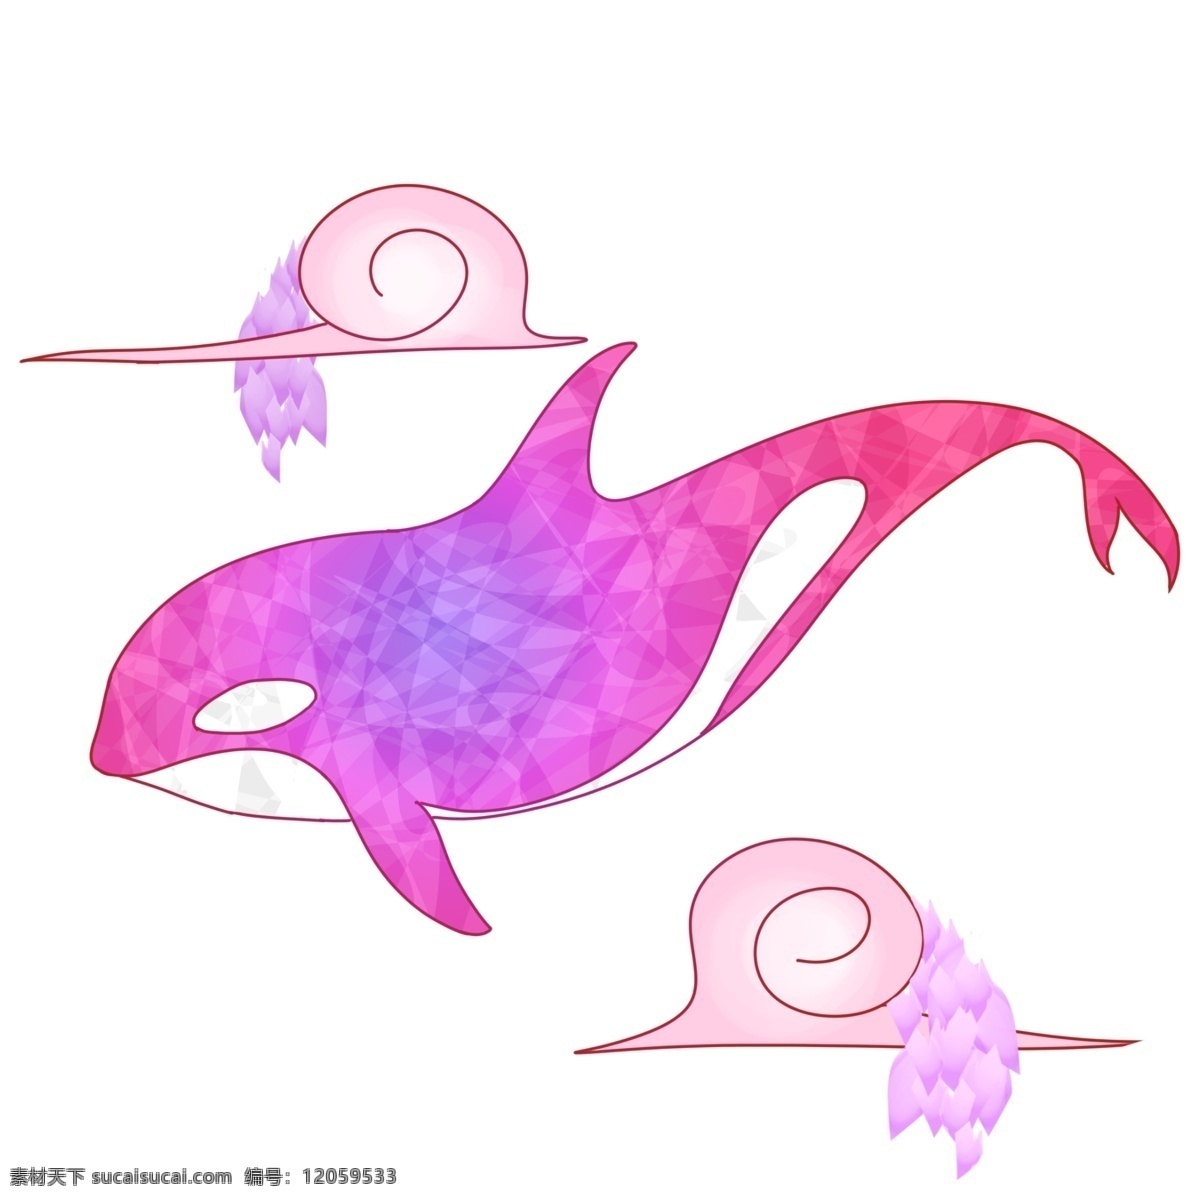 手绘 紫色 梦幻 鲸鱼 插画 手绘紫色鲸鱼 紫色梦幻鲸鱼 可爱鲸鱼 童话紫色鲸鱼 彩色鲸鱼 大鲸鱼 卡通梦幻鲸鱼 鲸鱼插画